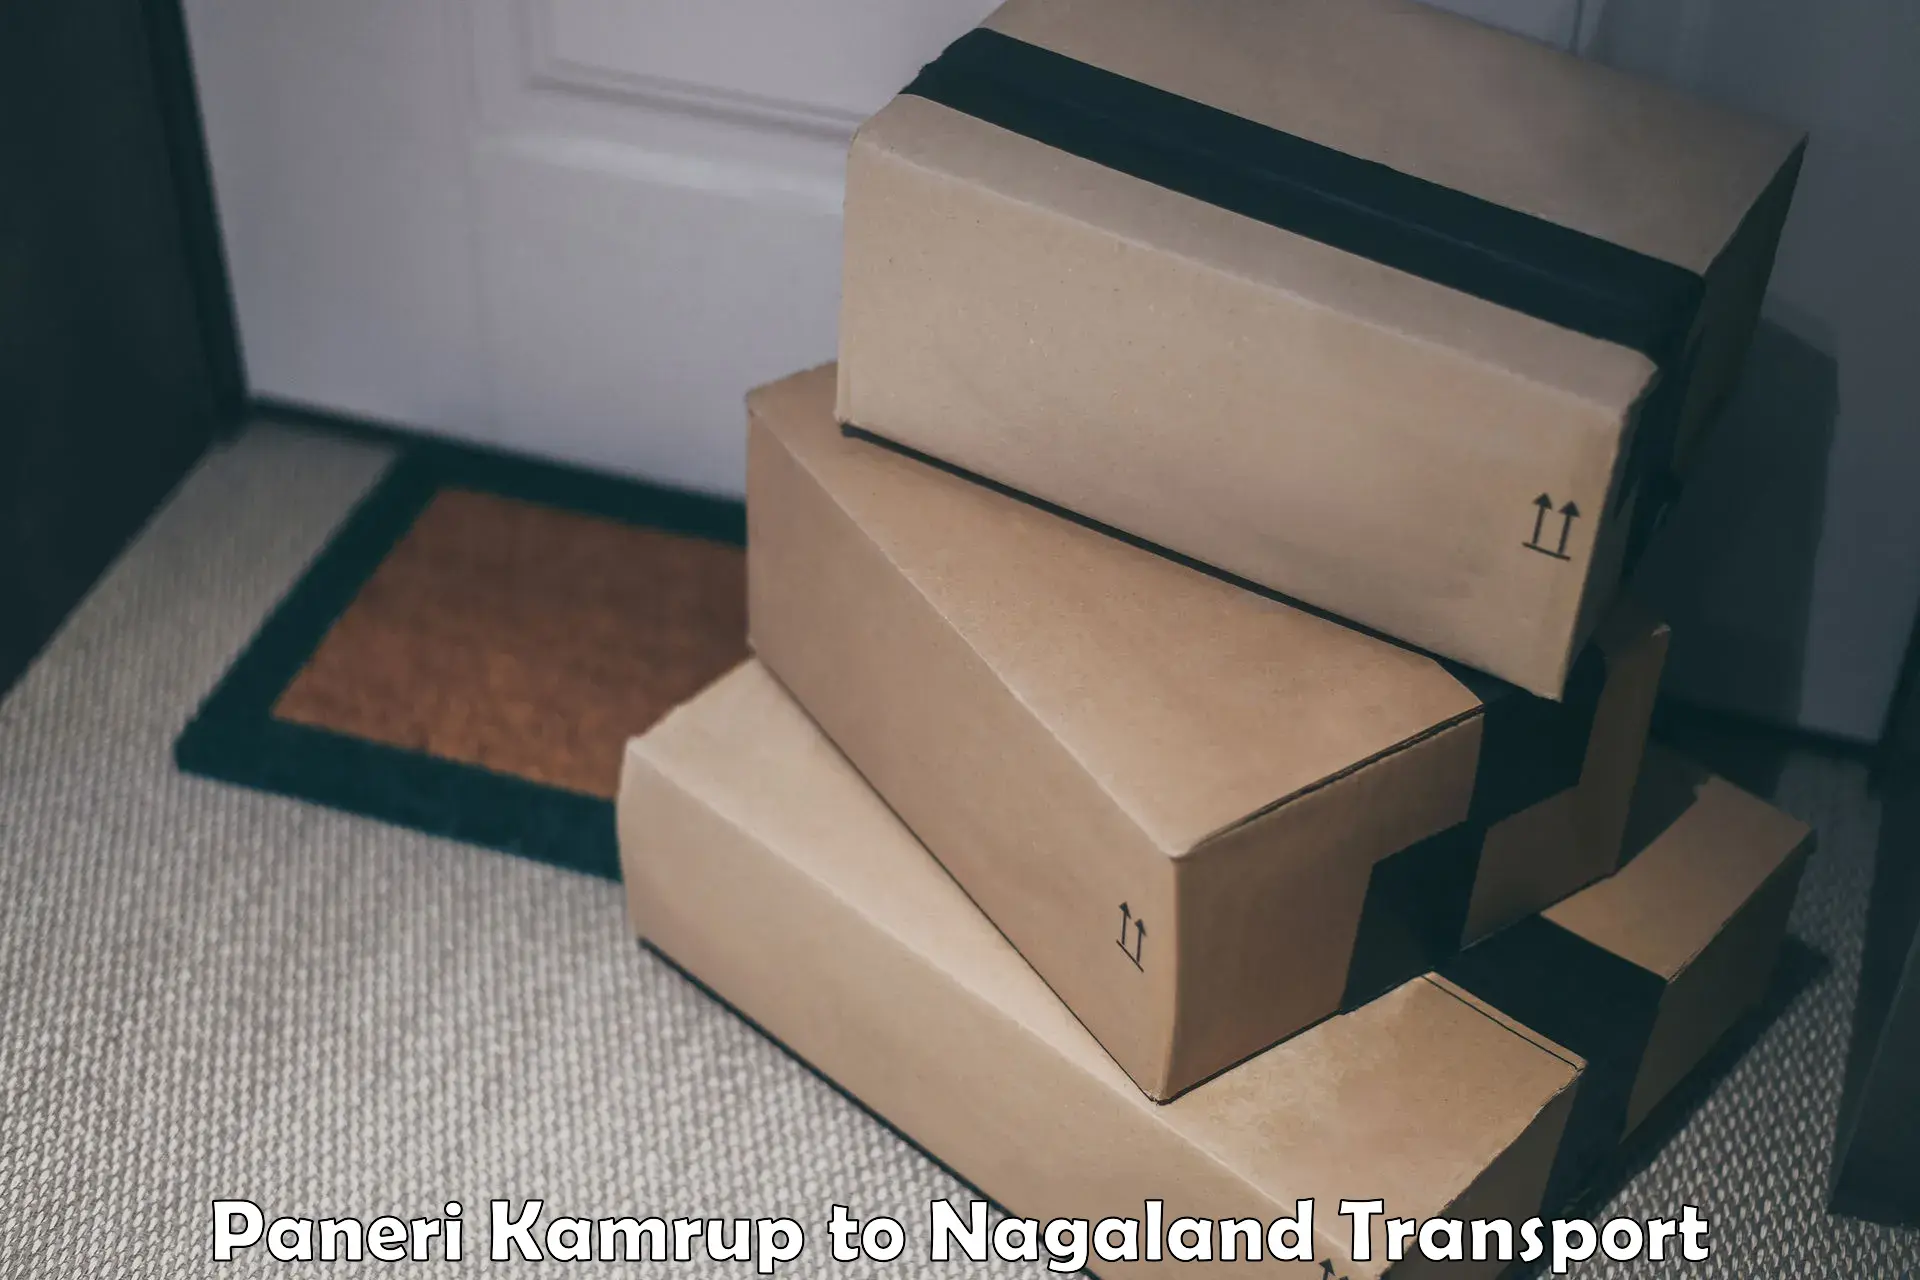 Shipping partner Paneri Kamrup to NIT Nagaland